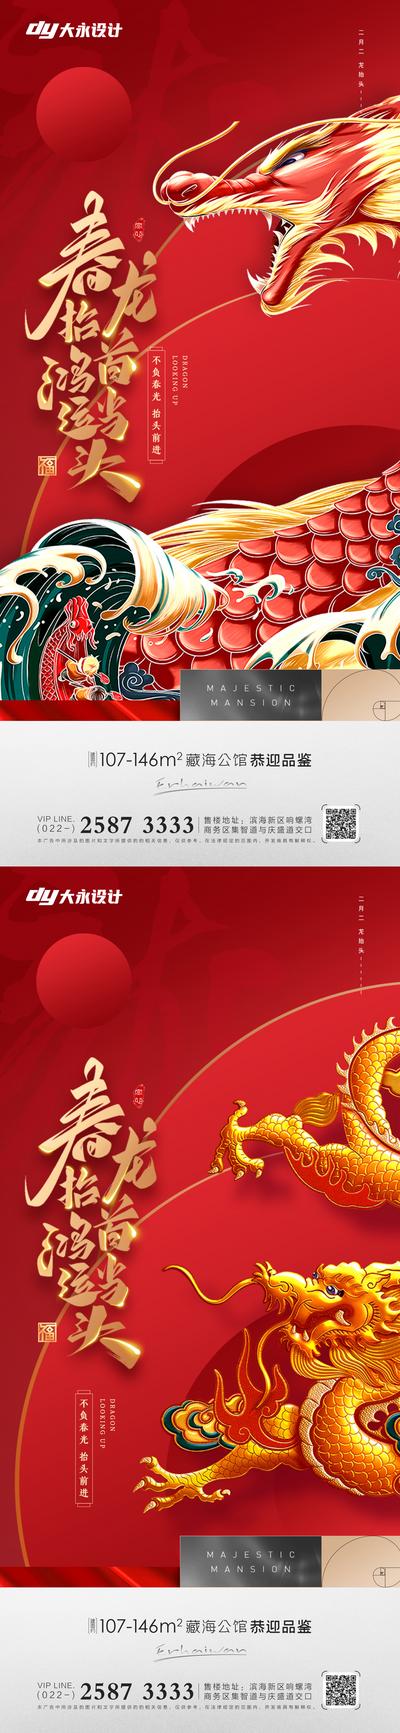 南门网 海报 中国传统节日 房地产 龙抬头 二月二 龙 国潮 鸿运